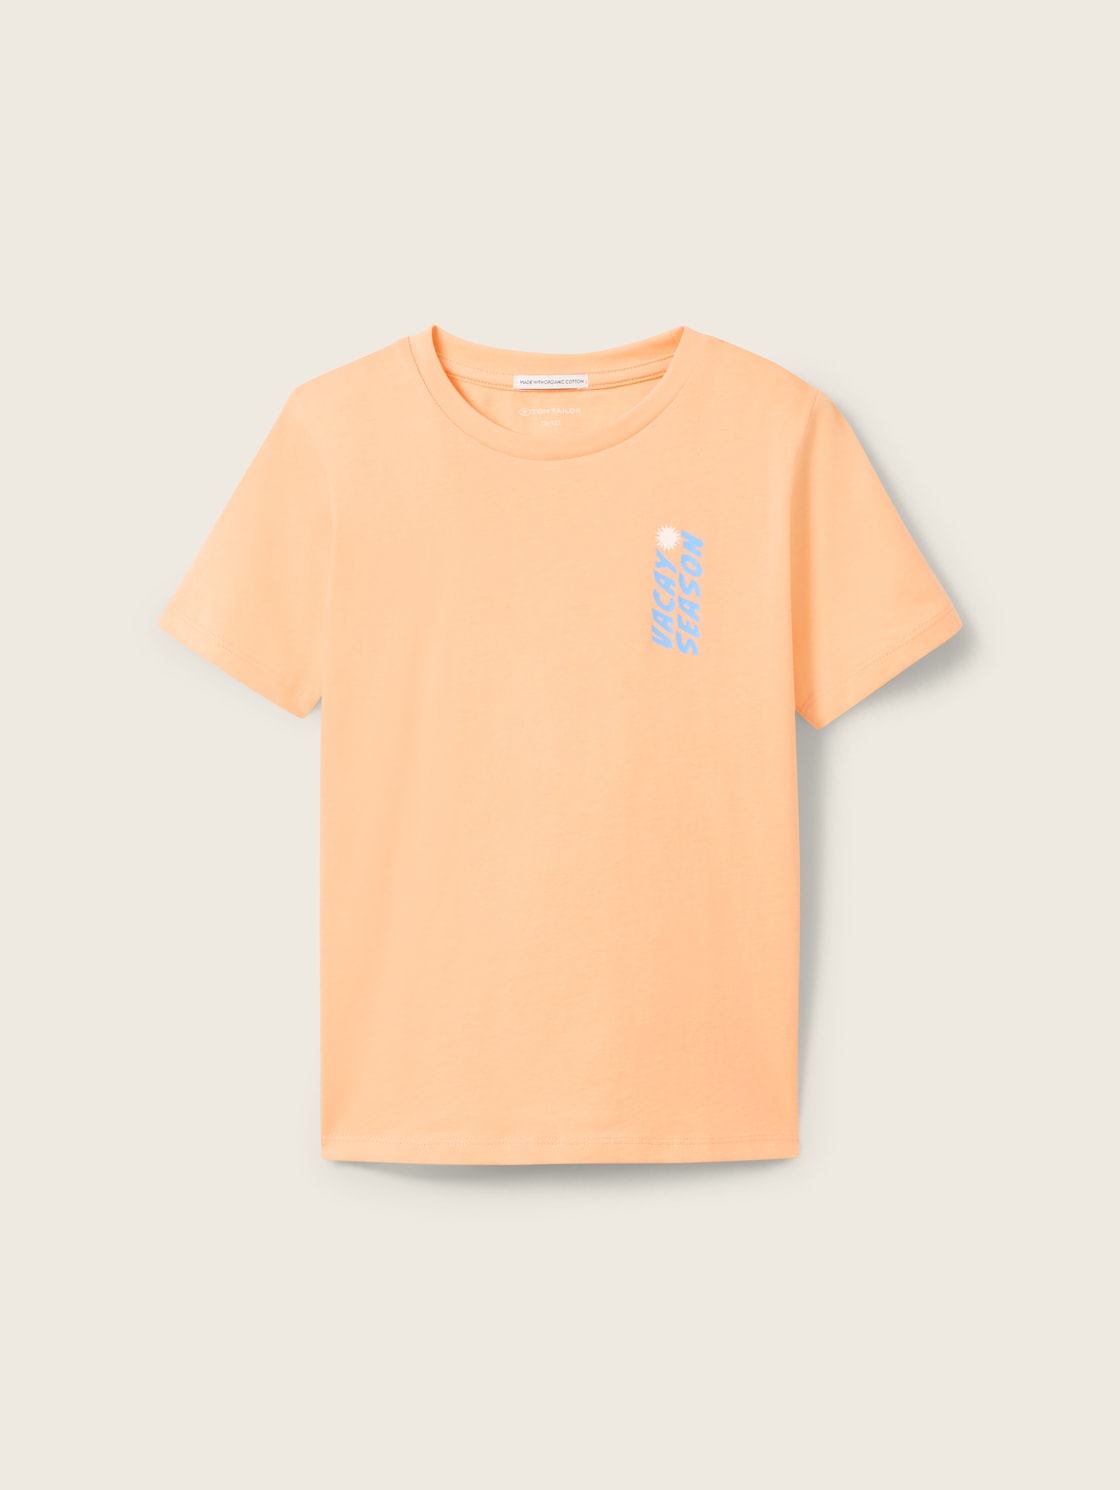 TOM TAILOR Jungen T-Shirt mit Special Print, orange, Print, Gr. 92/98 von Tom Tailor